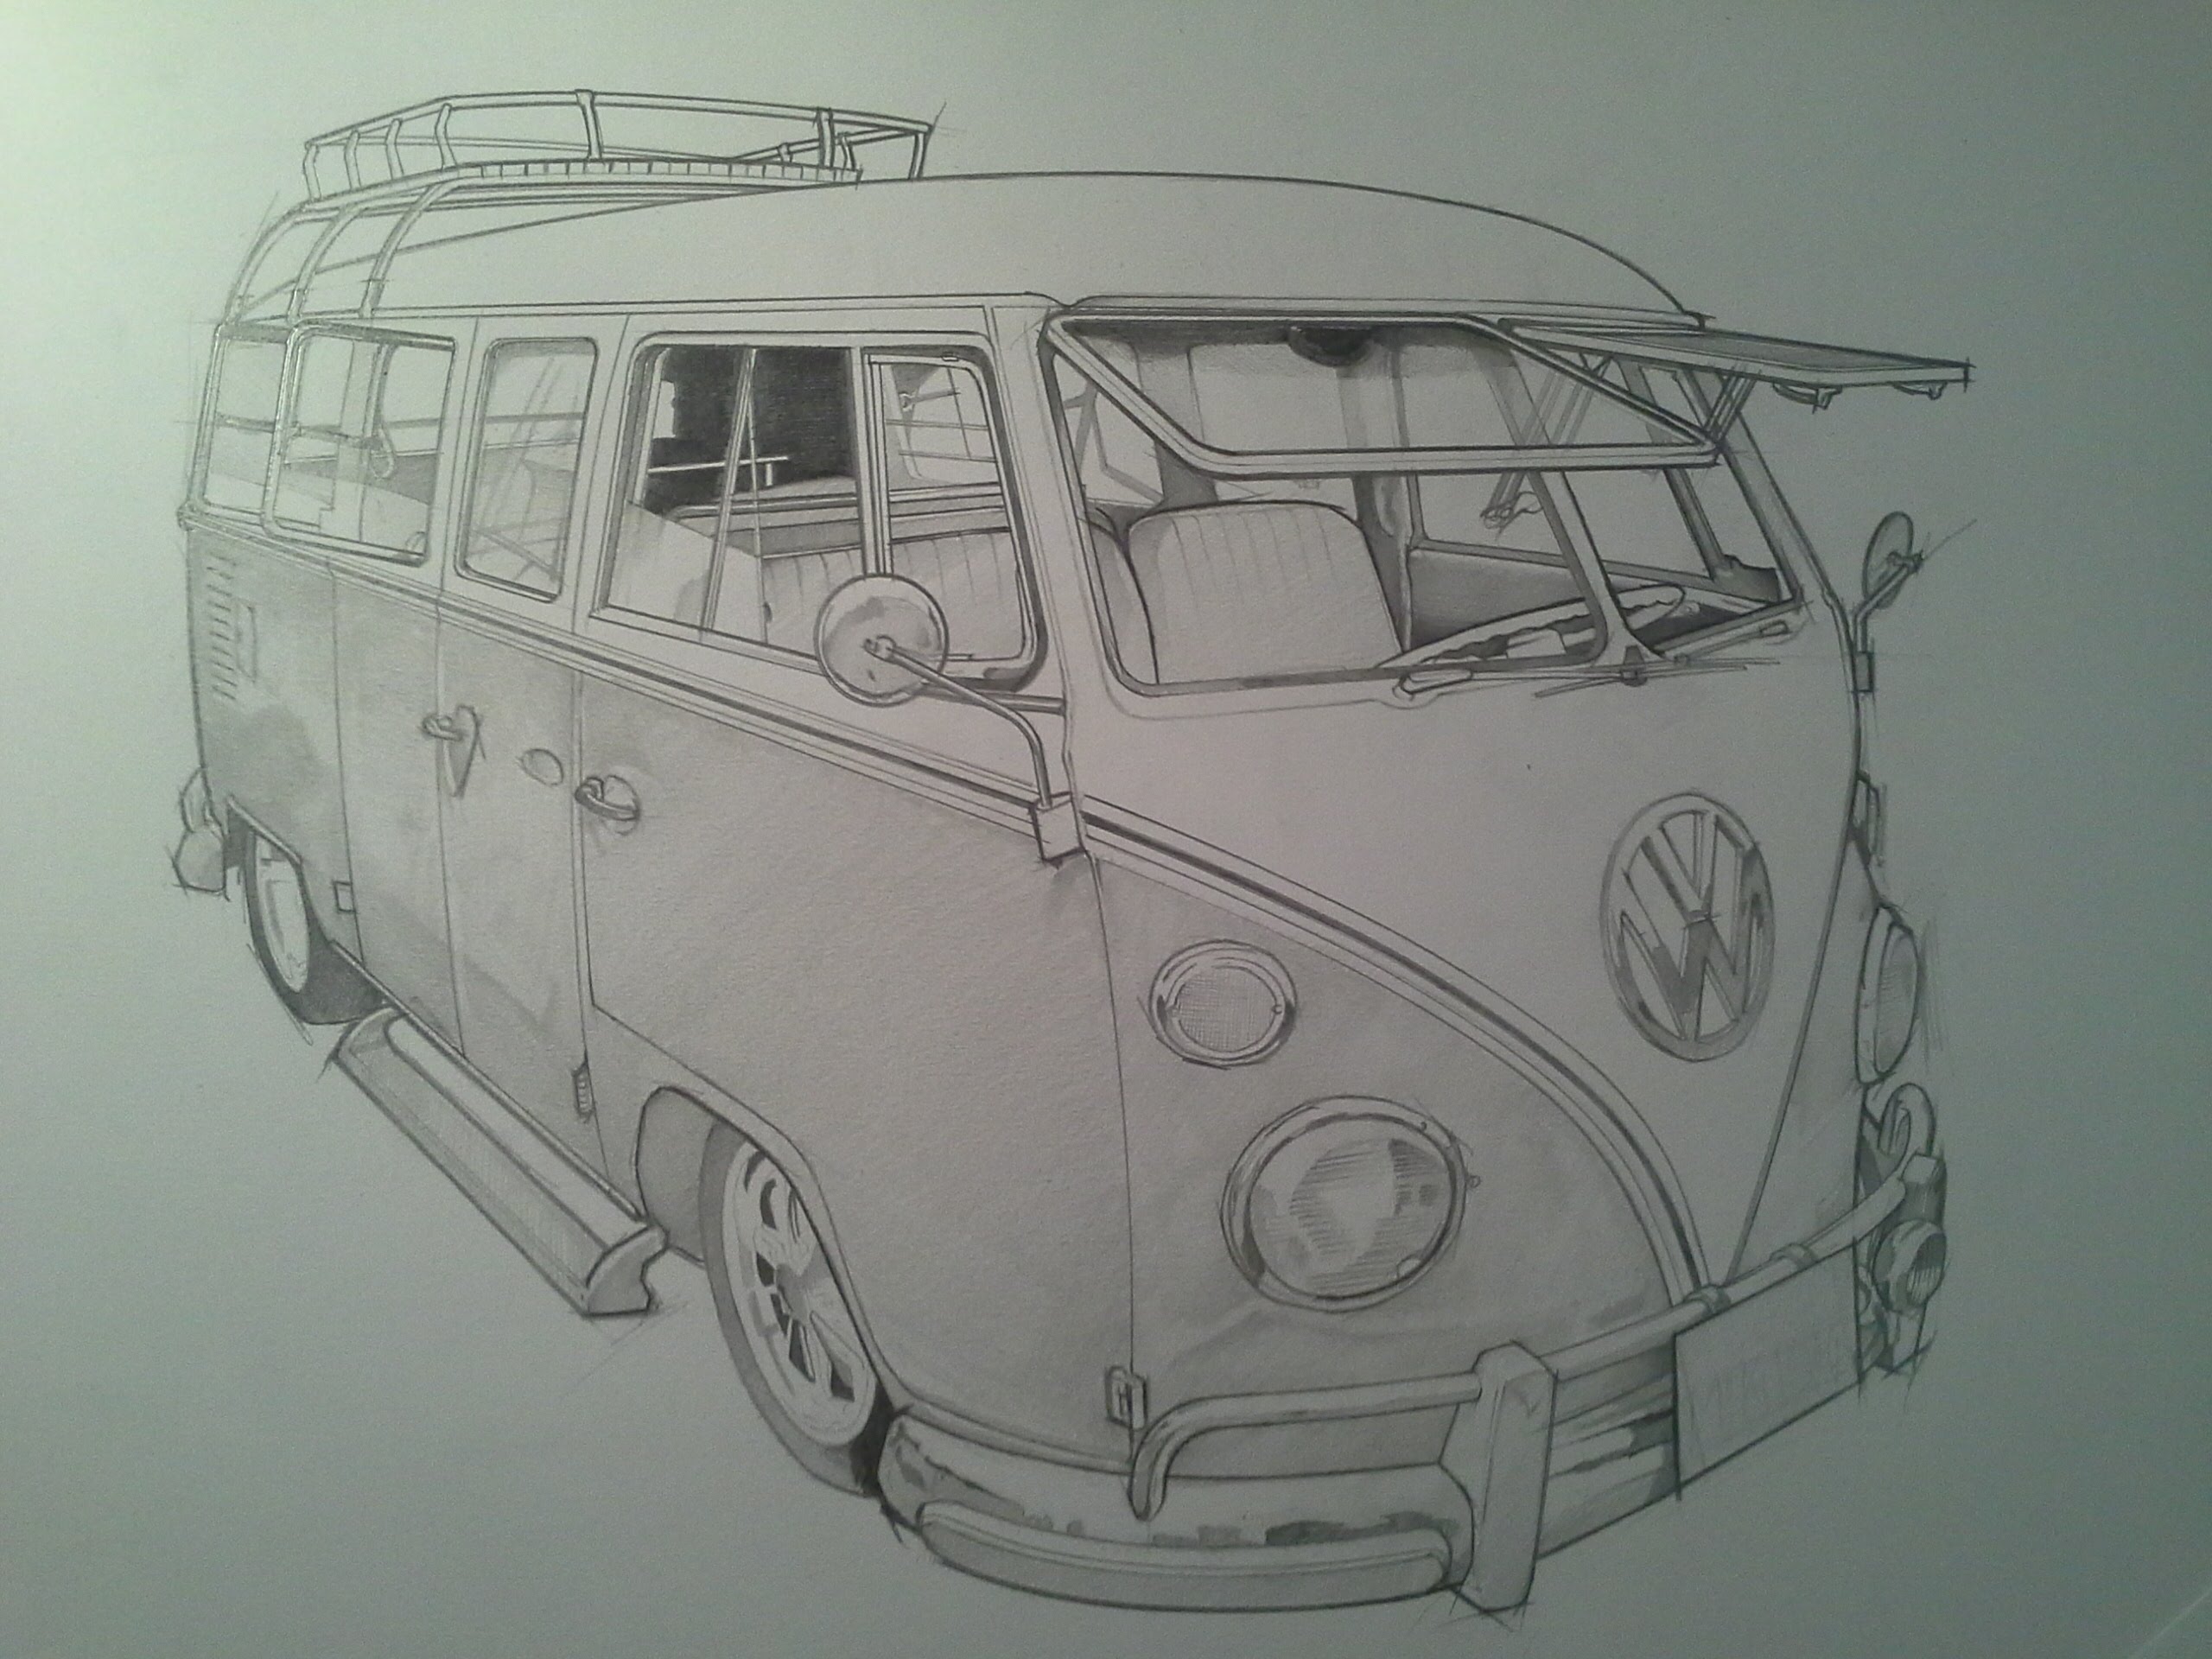 Volkswagen Van Drawing at GetDrawings Free download